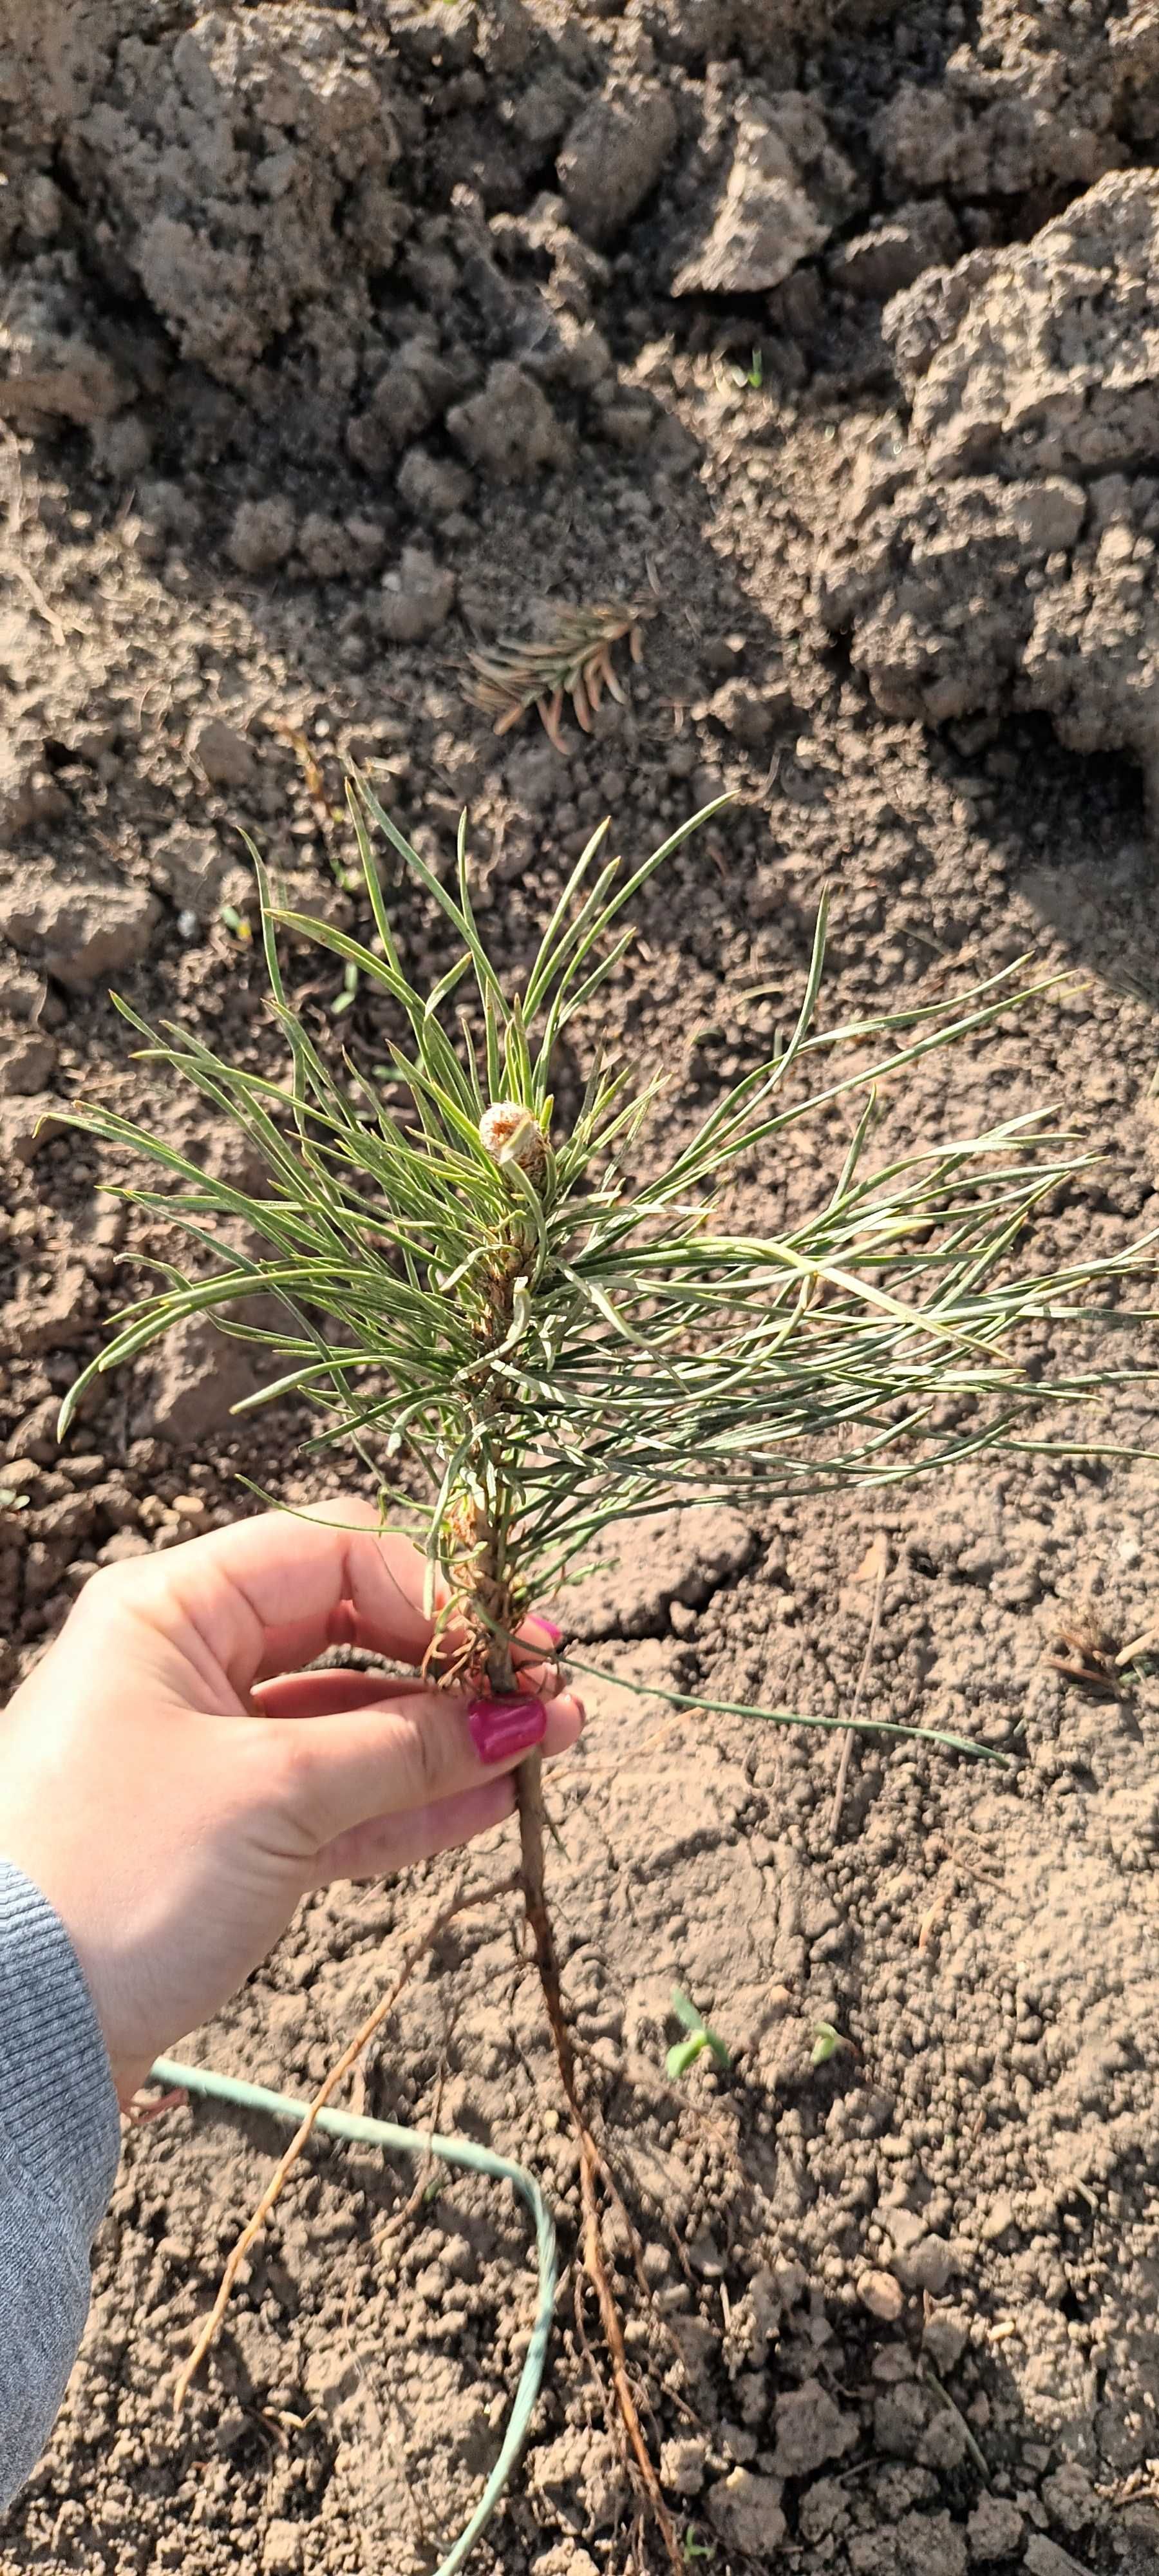 Pinus Nigra 15-20 cm